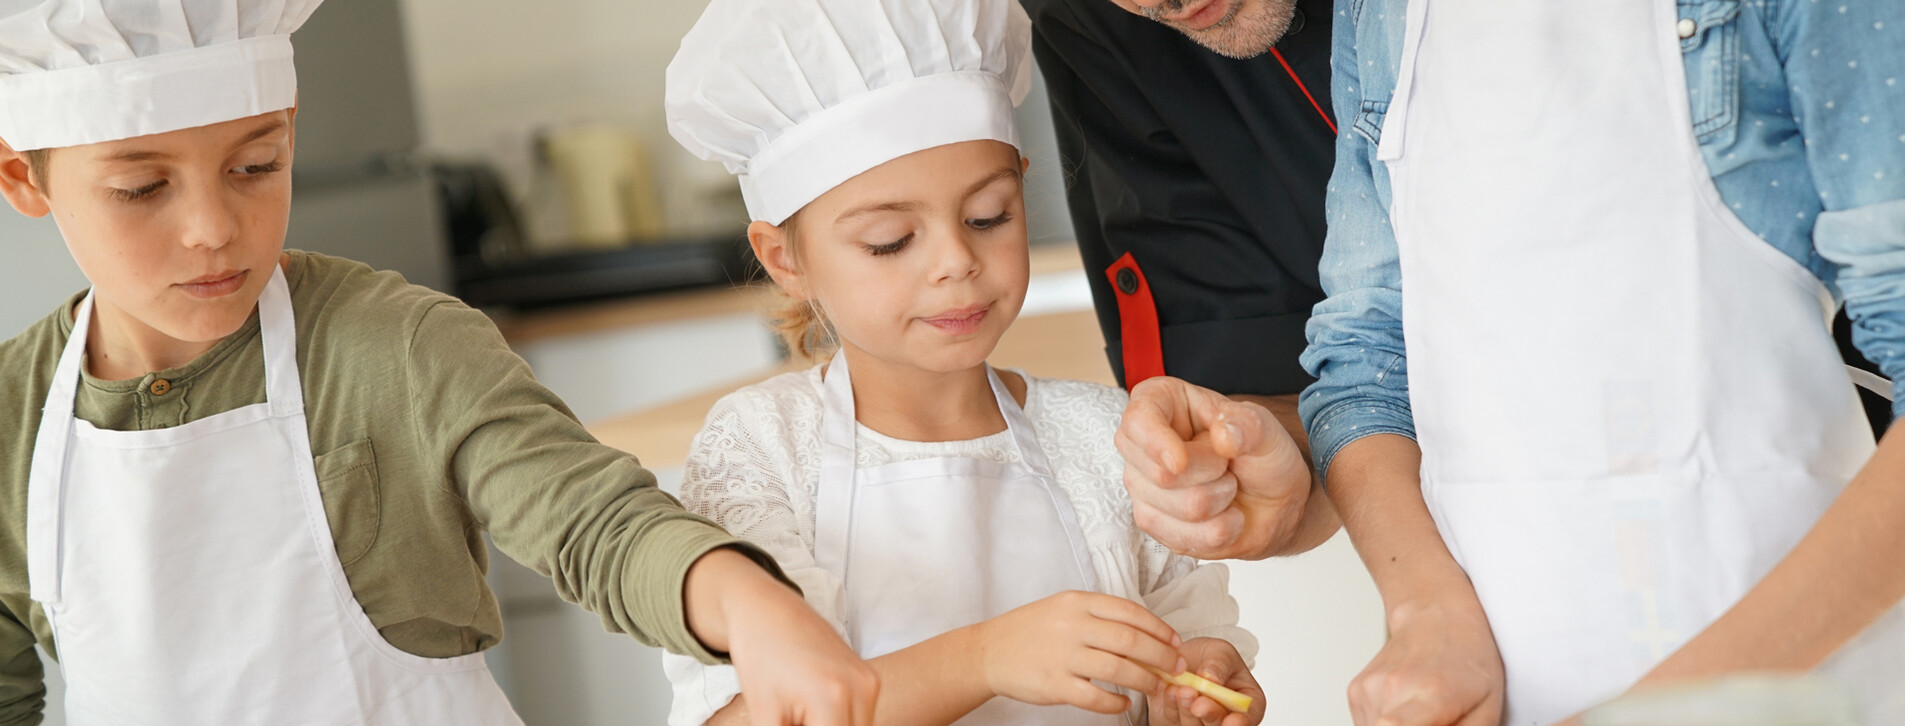 Фото 1 - Дитячий кулінарний майстер-клас для компанії